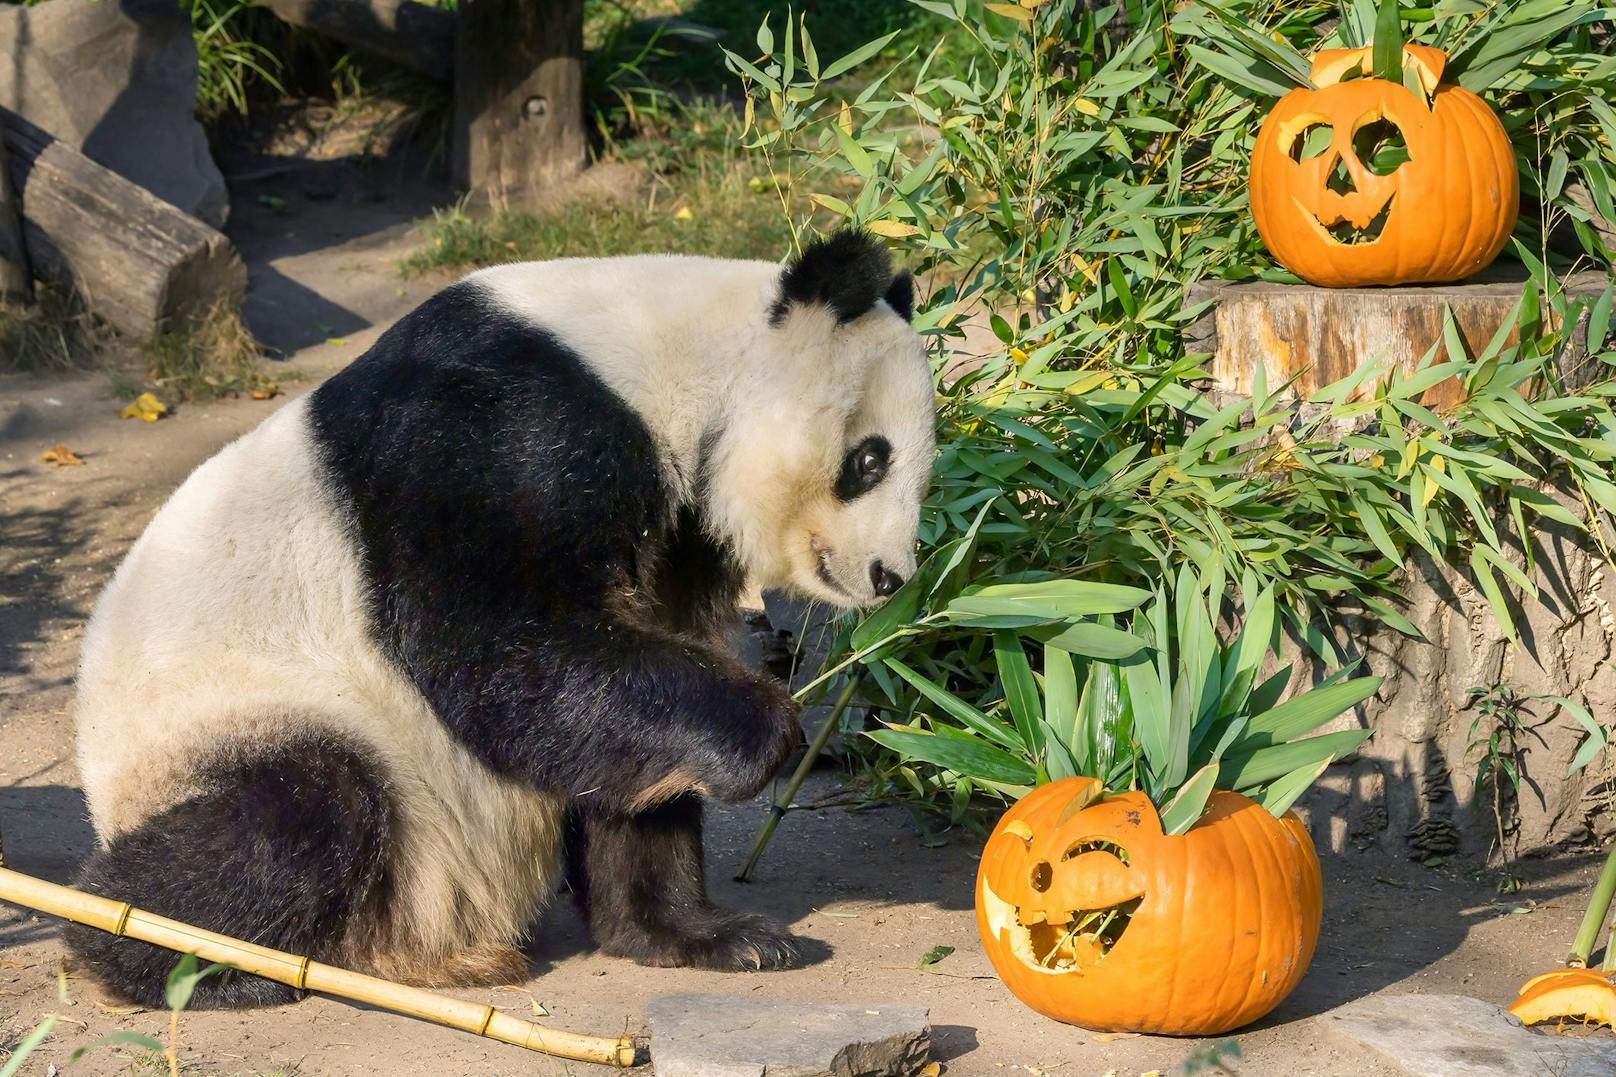 Die gruseligen Kürbisgesichter wurden für de Pandas schmackhaft gefüllt. 